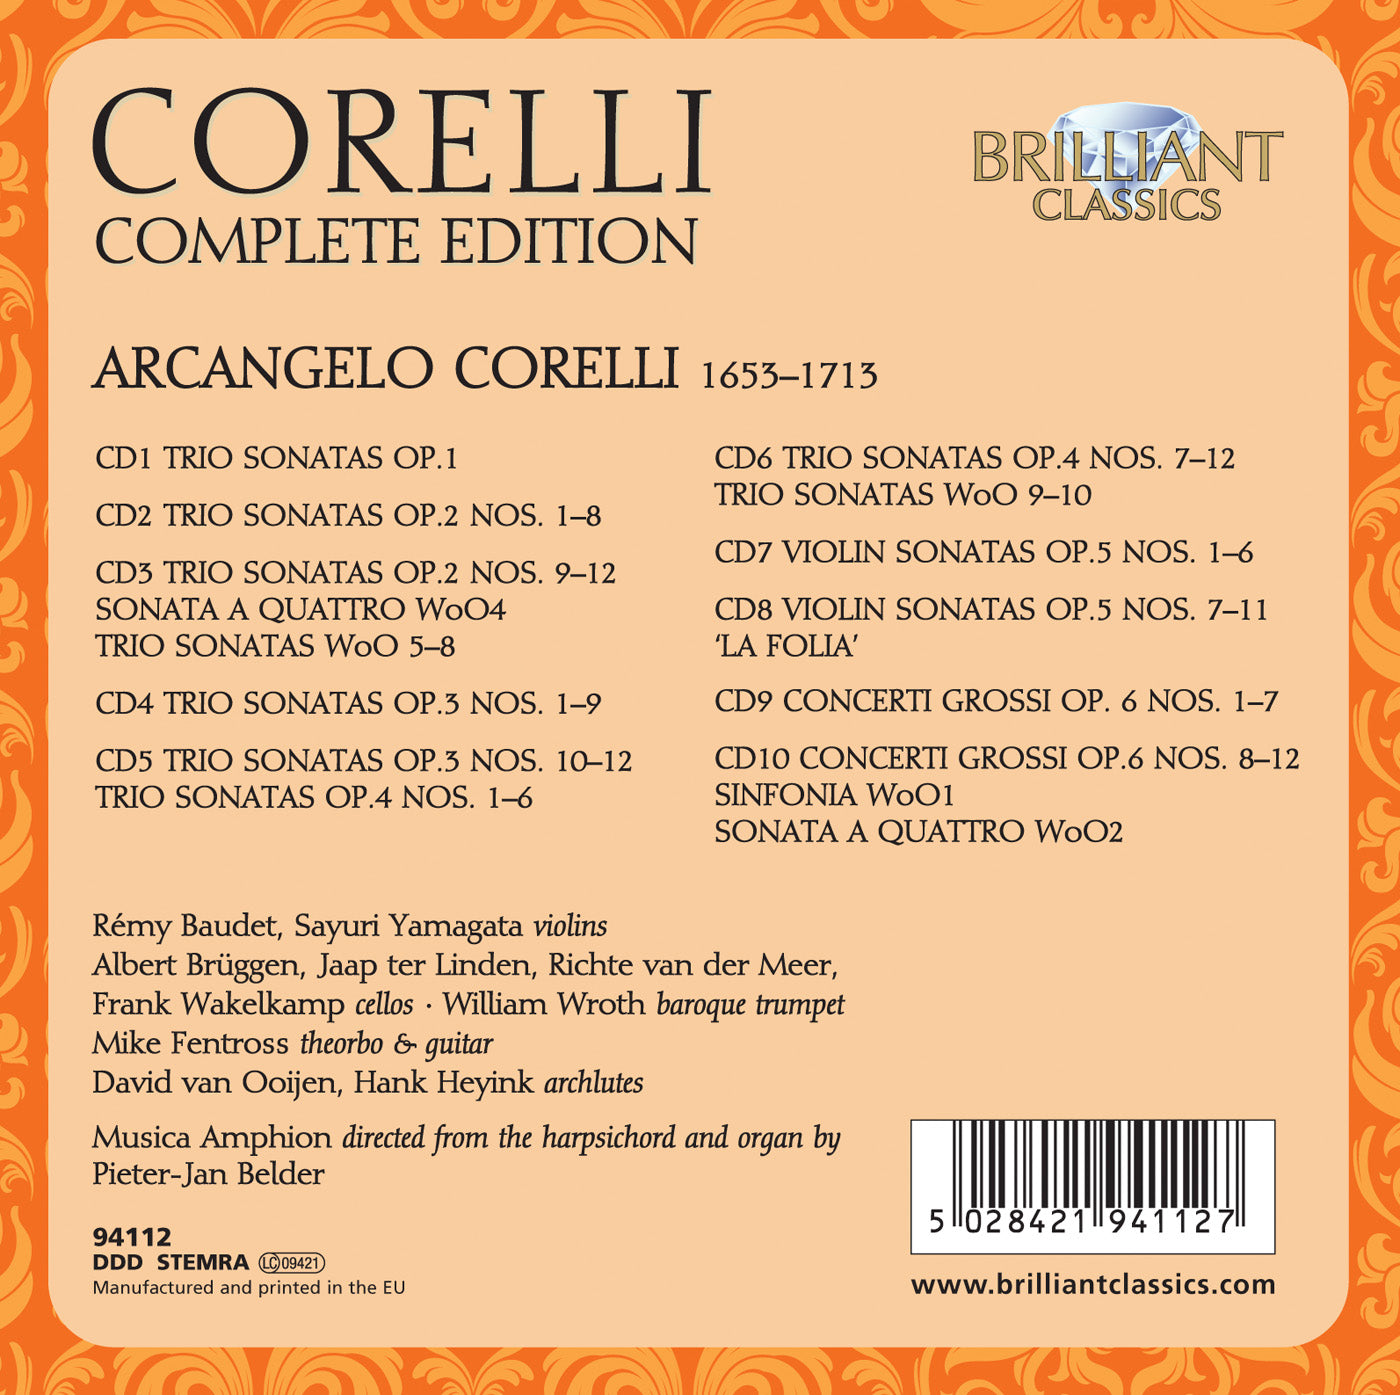 Corelli Complete Edition